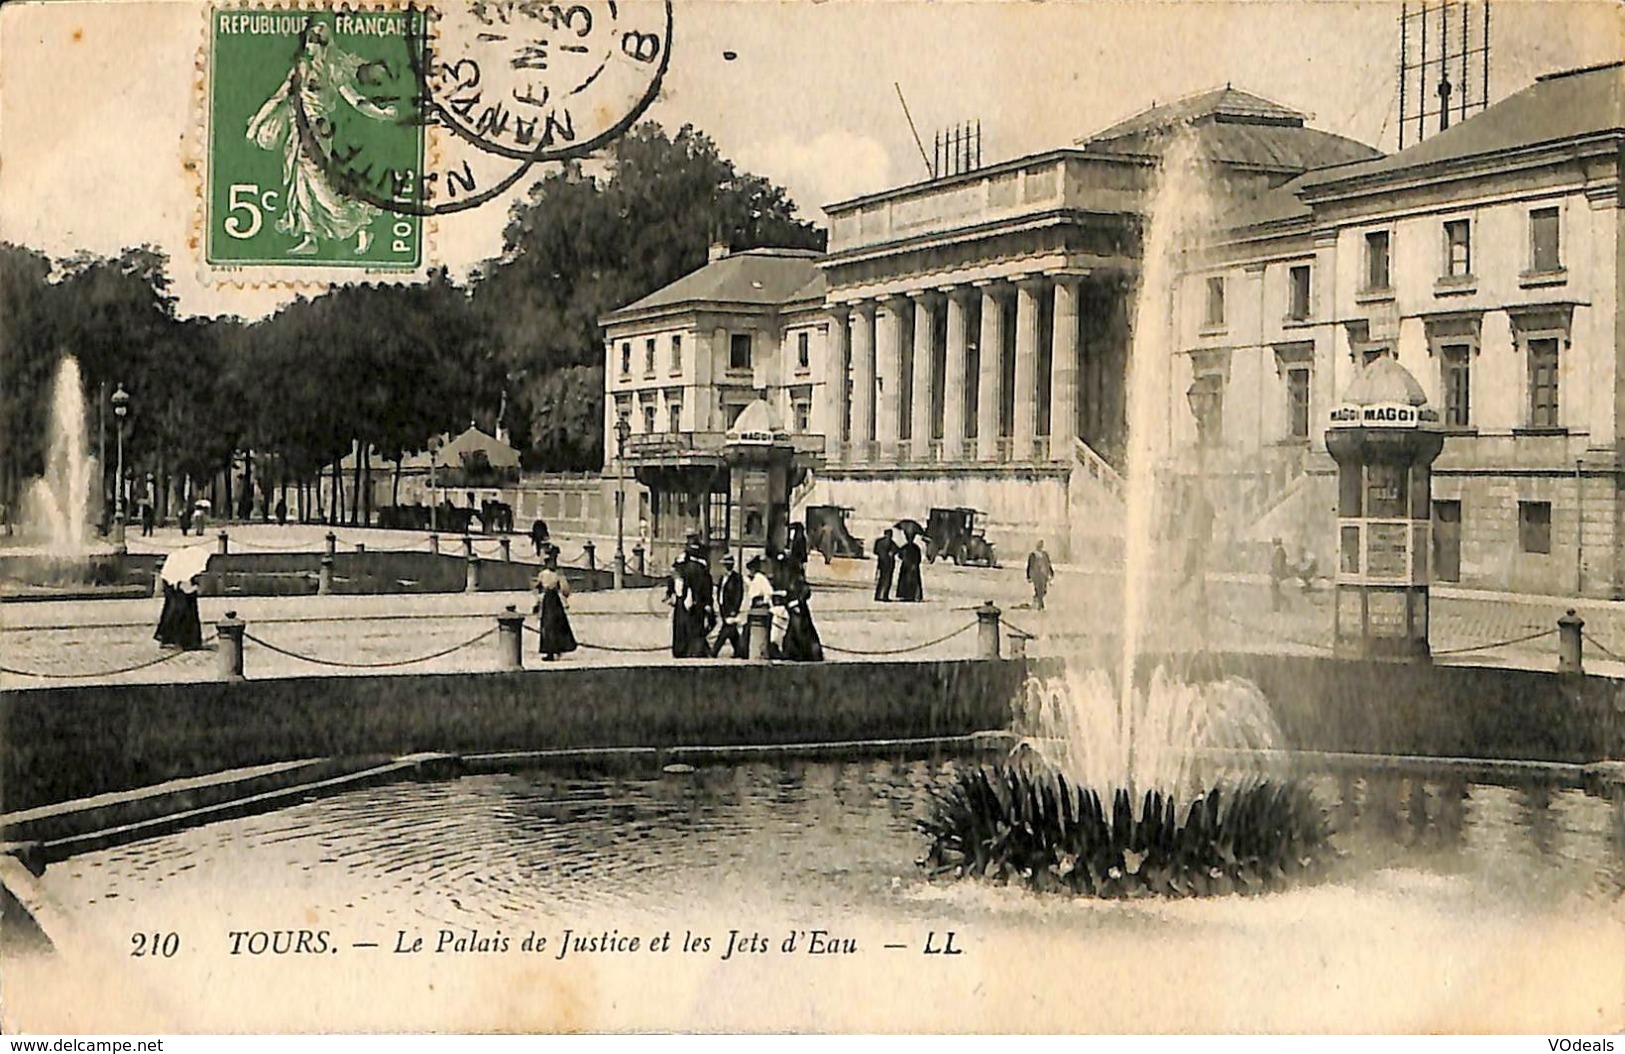 CPA - France - Lot de 10 cartes postales - Lot 24